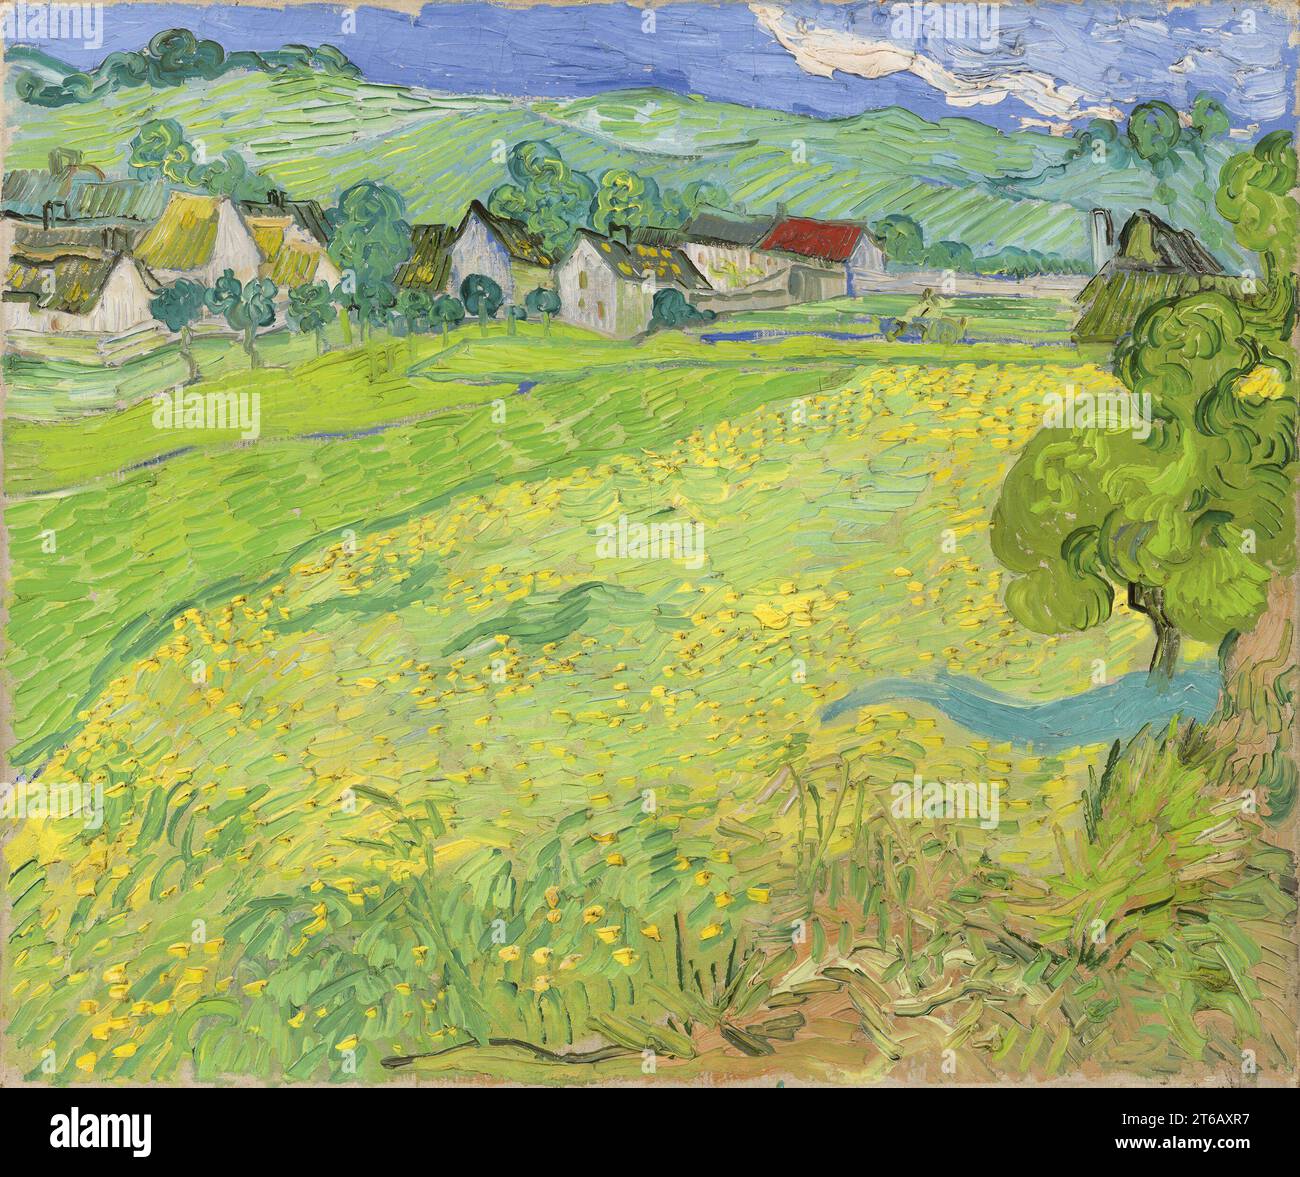 Titolo: Les Vessenots in Auvers artista: Vincent van Gogh anno: 1890 Medio: Olio su tela dimensioni: 55 x 65 cm ubicazione: Museo Nacional Thyssen-Bornemisza, Madrid Foto Stock